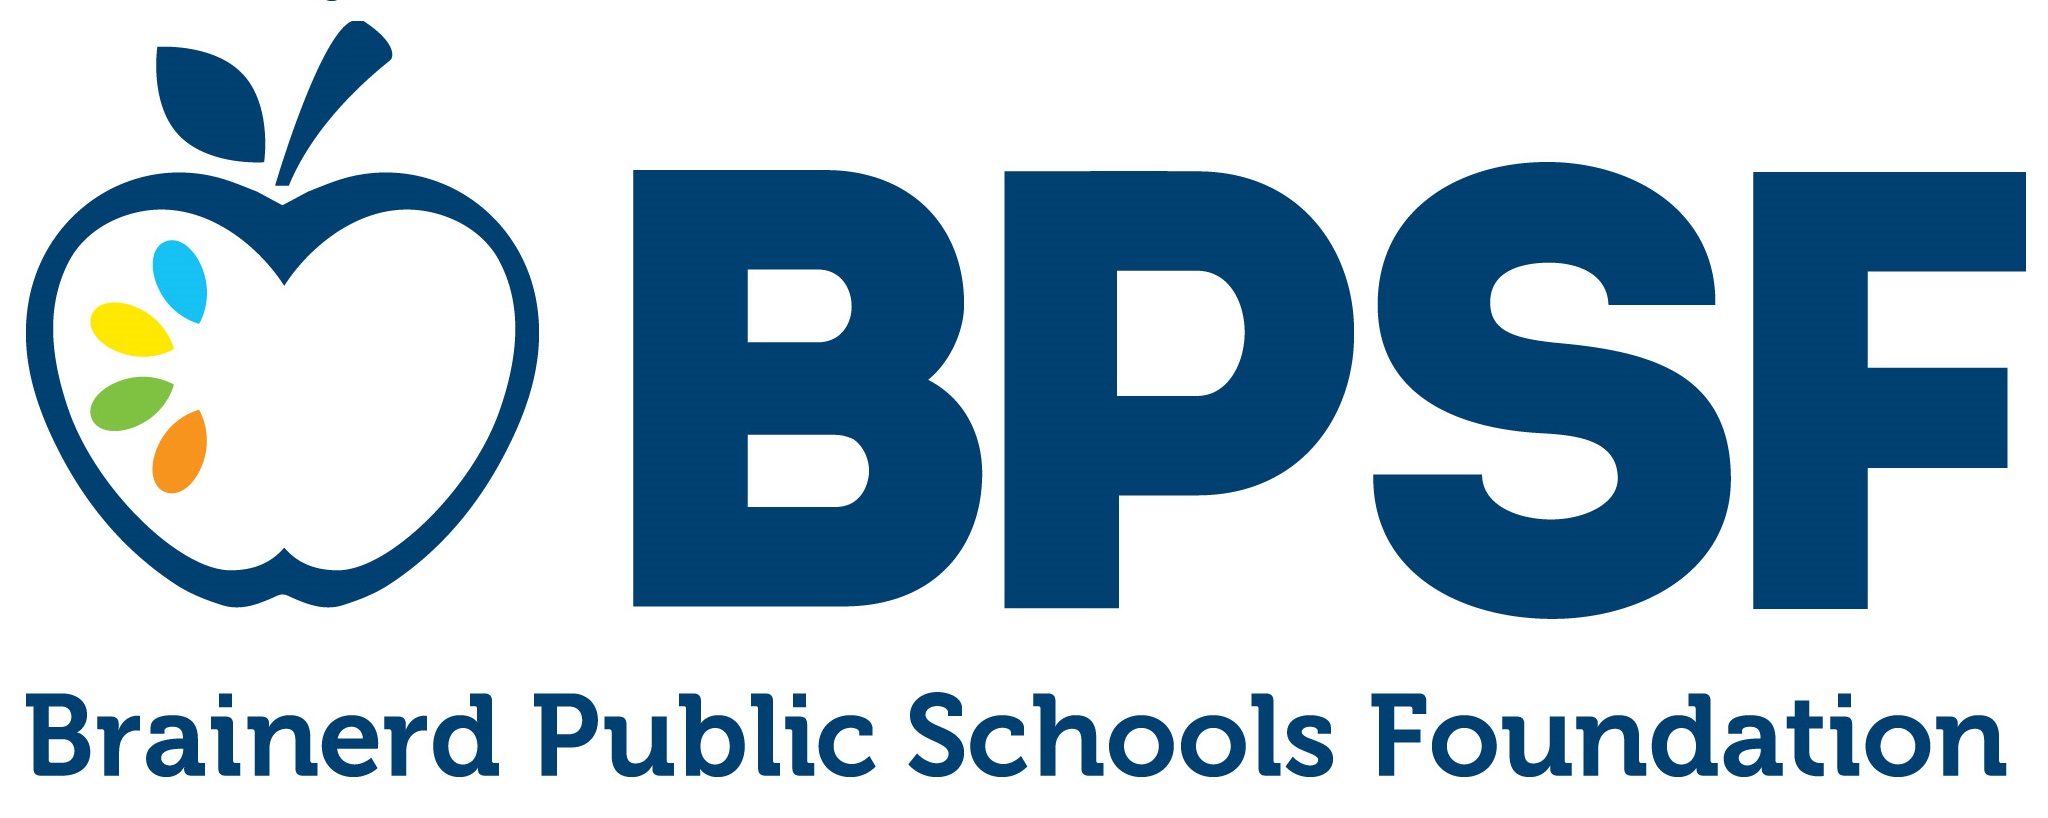 Brainerd Public Schools Foundation